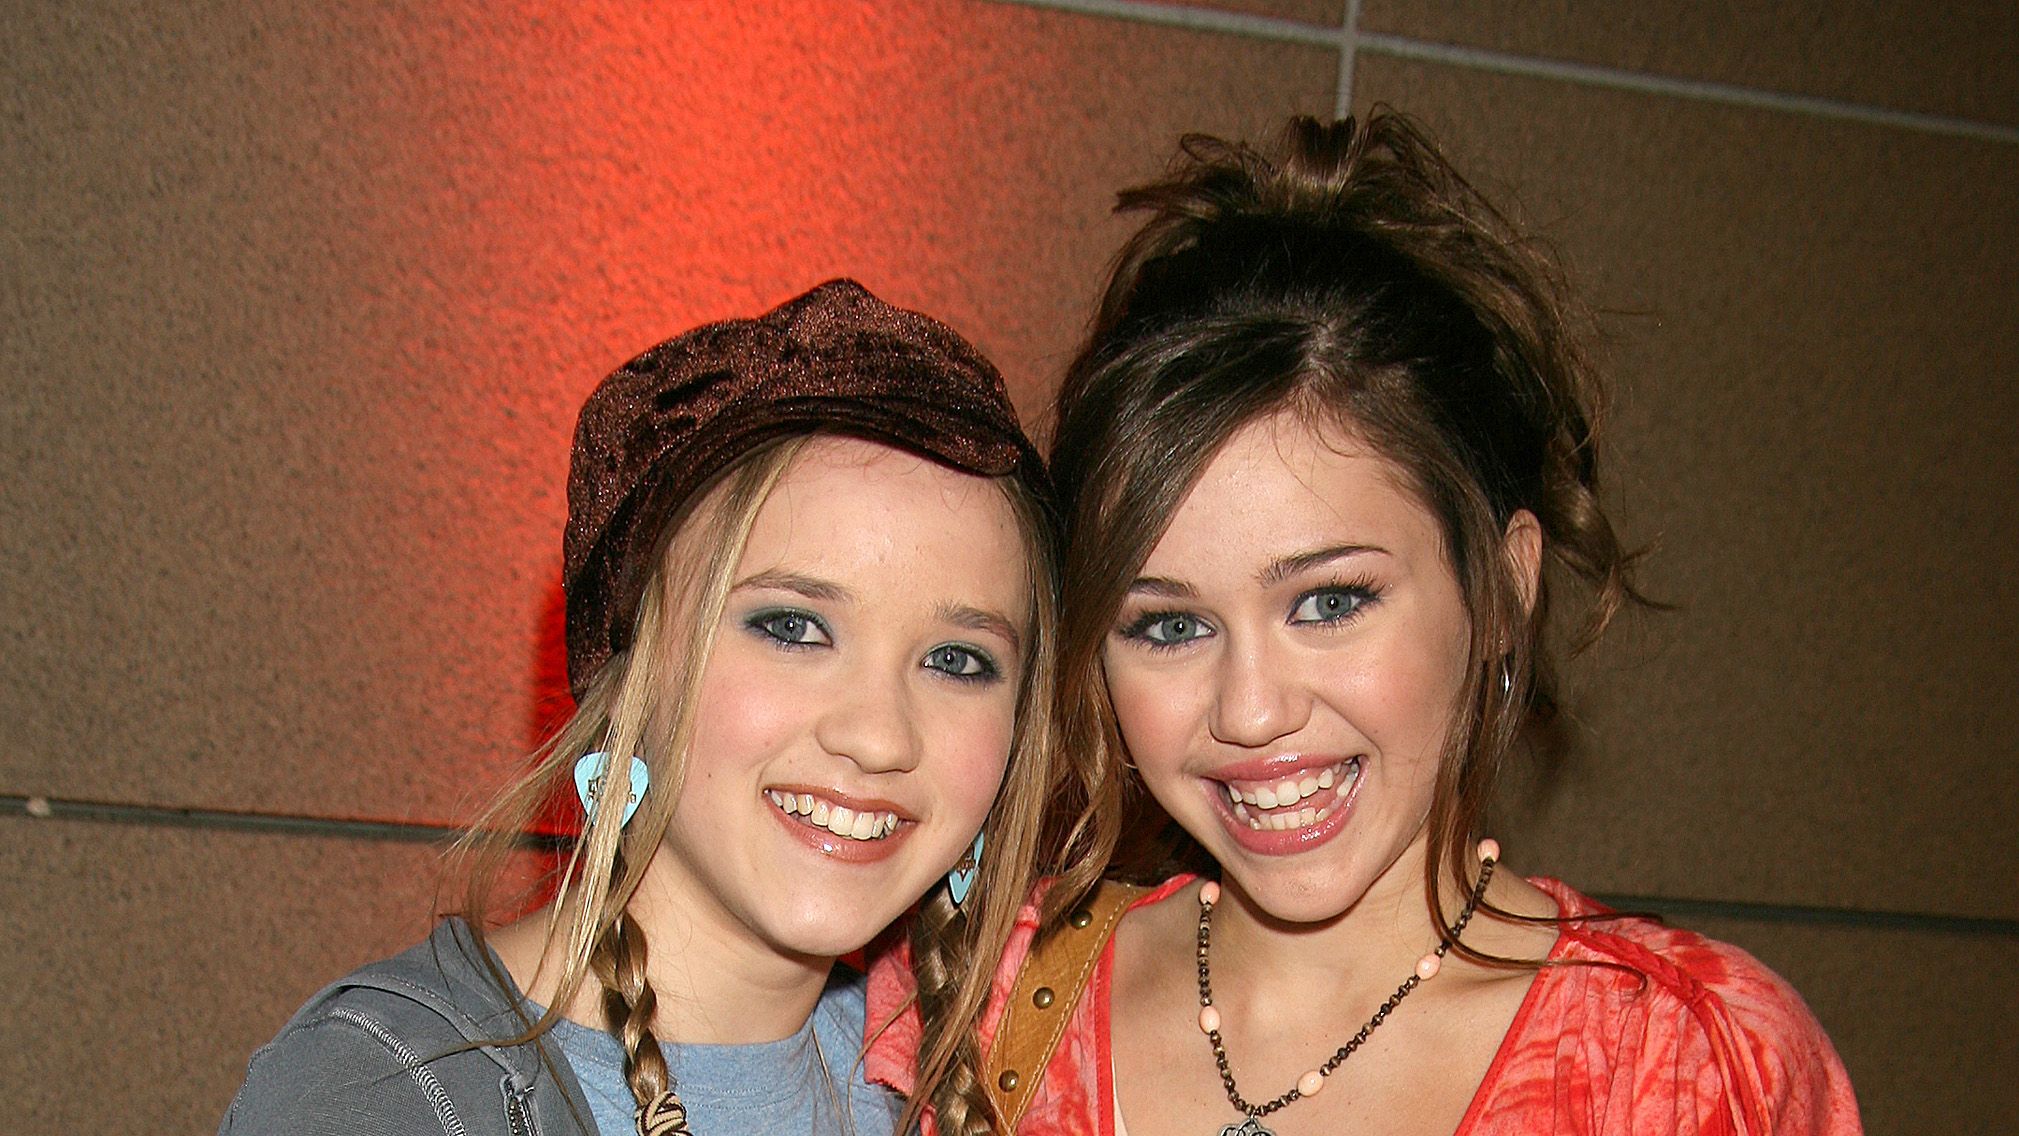 Miley Cyrus Emily Osment Had a #39 Hannah Montana #39 Reunion Marie Claire